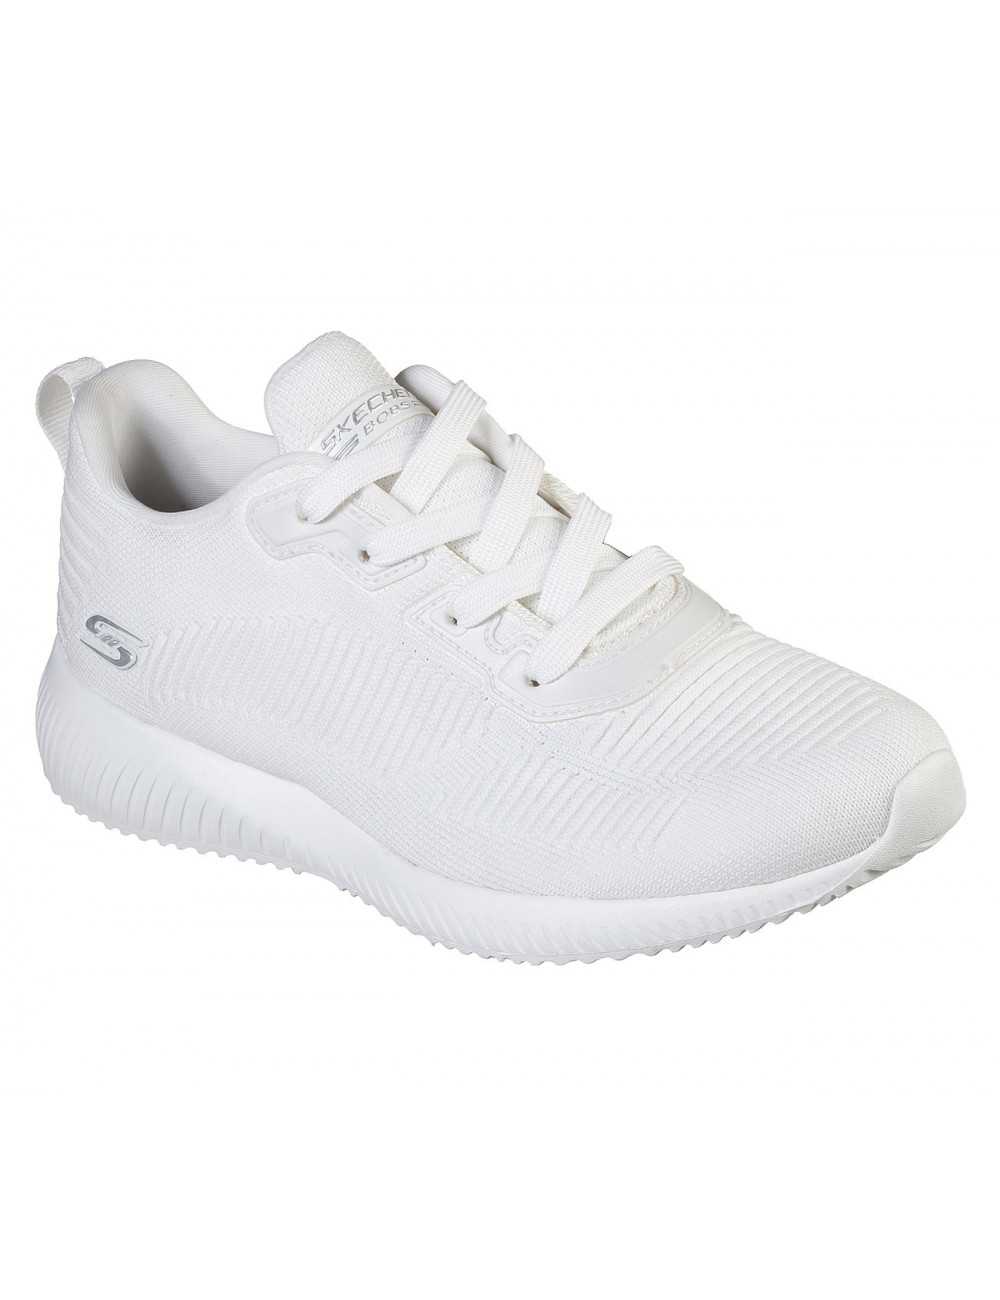 Zapatillas de mujer Blanco Skechers